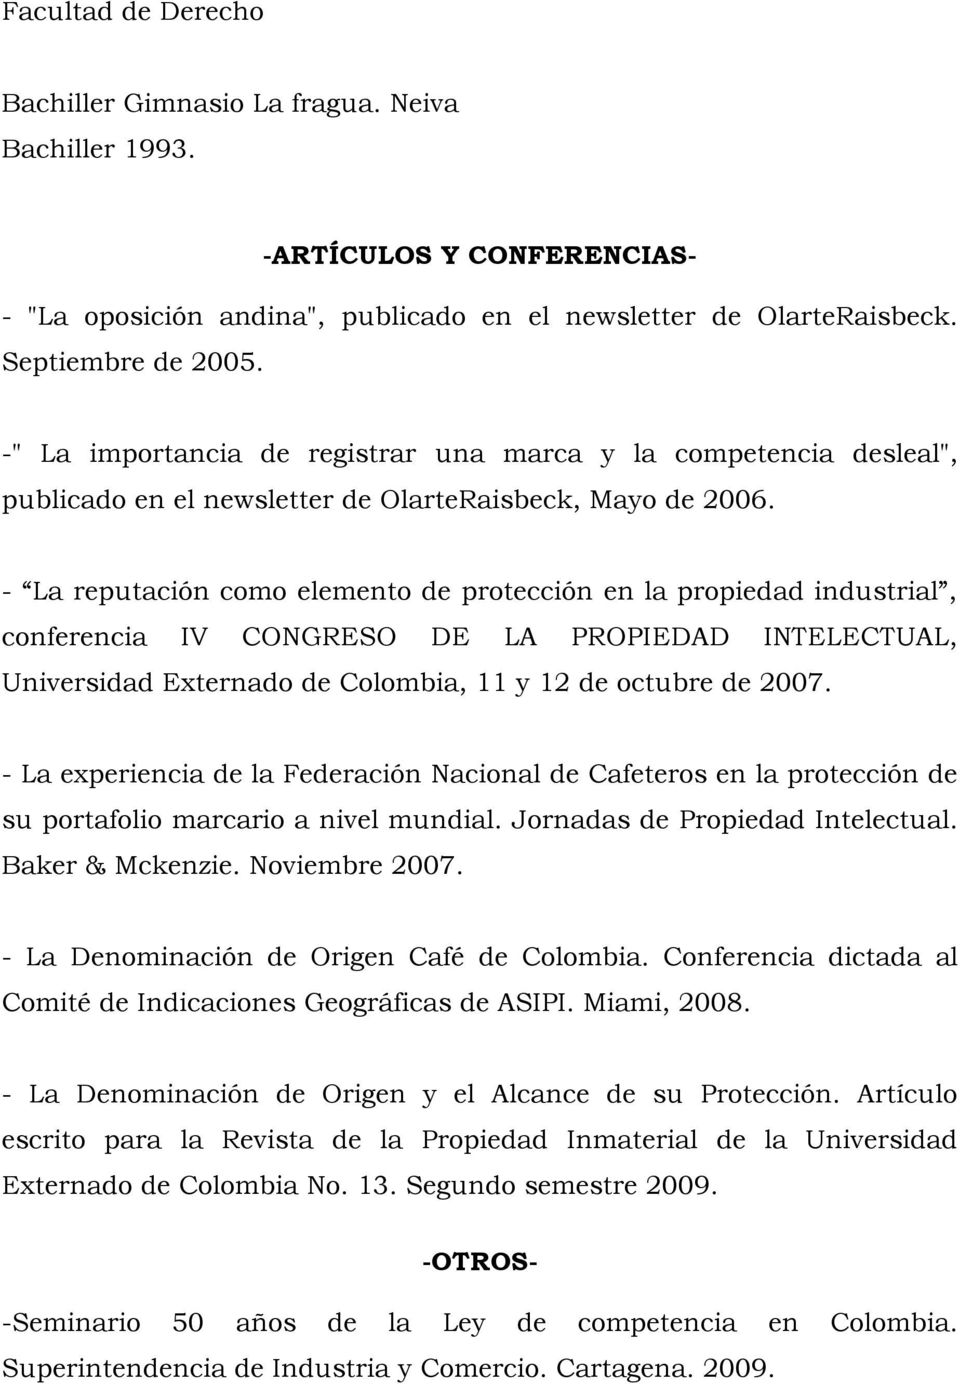 - La reputación como elemento de protección en la propiedad industrial, conferencia IV CONGRESO DE LA PROPIEDAD INTELECTUAL, Universidad Externado de Colombia, 11 y 12 de octubre de 2007.